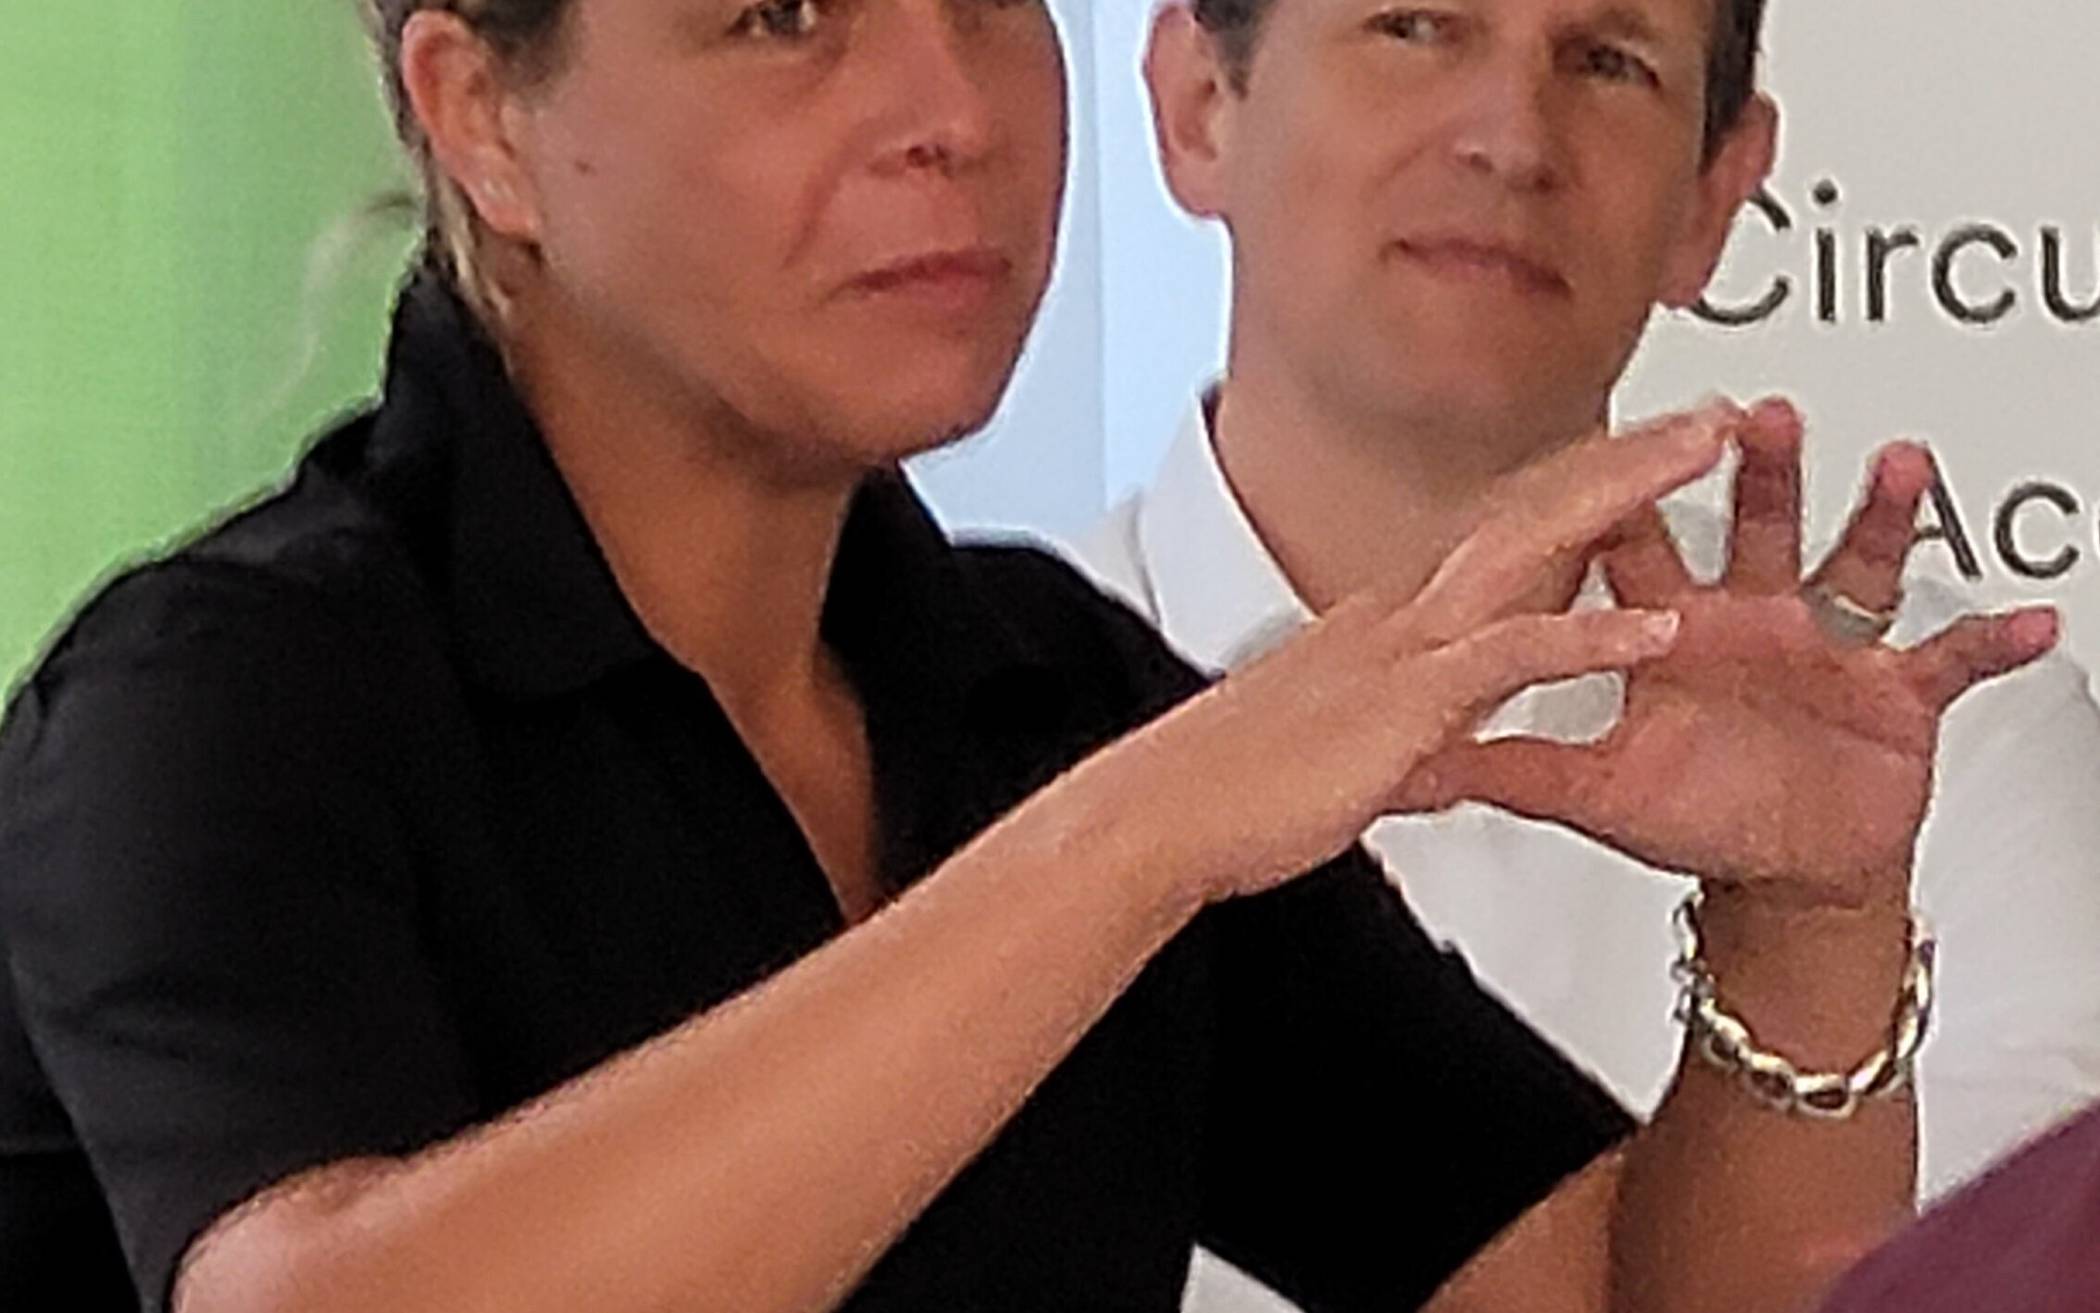  Mona Neubaur mit Carsten Gerhardt, dem Vorsitzenden der Wuppertalbewegung, die „Circular Valley“ als Thinktank für die Kreislaufwirtschaft ins Leben gerufen hat. 